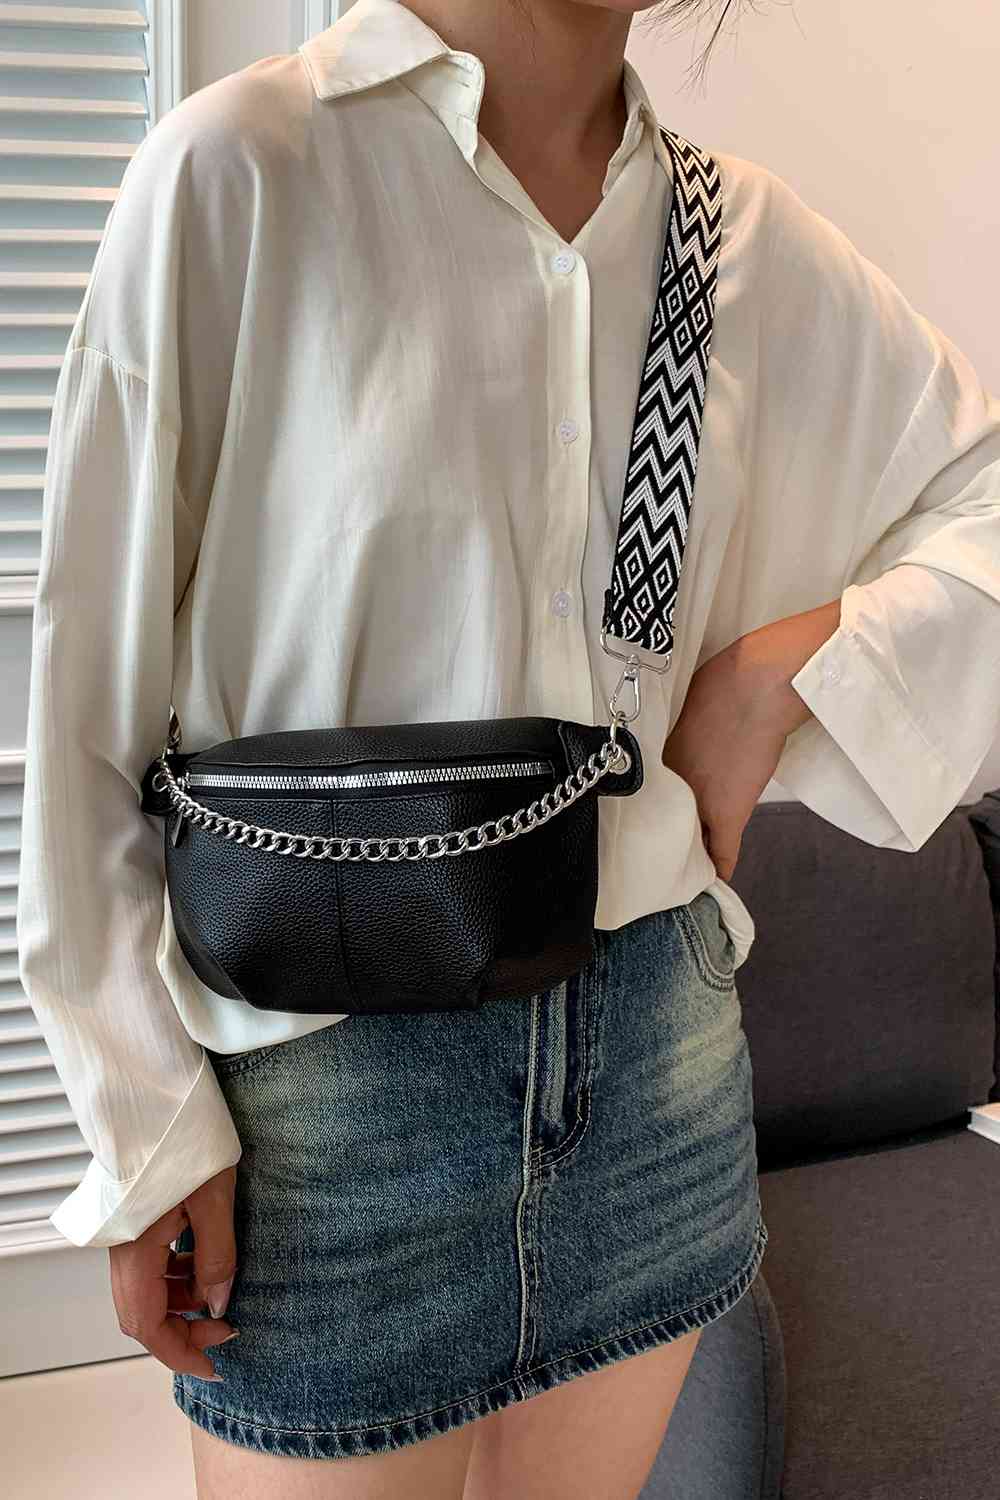 TEEK - Chain Zipper PU Leather Sling Bag BAG TEEK Trend   